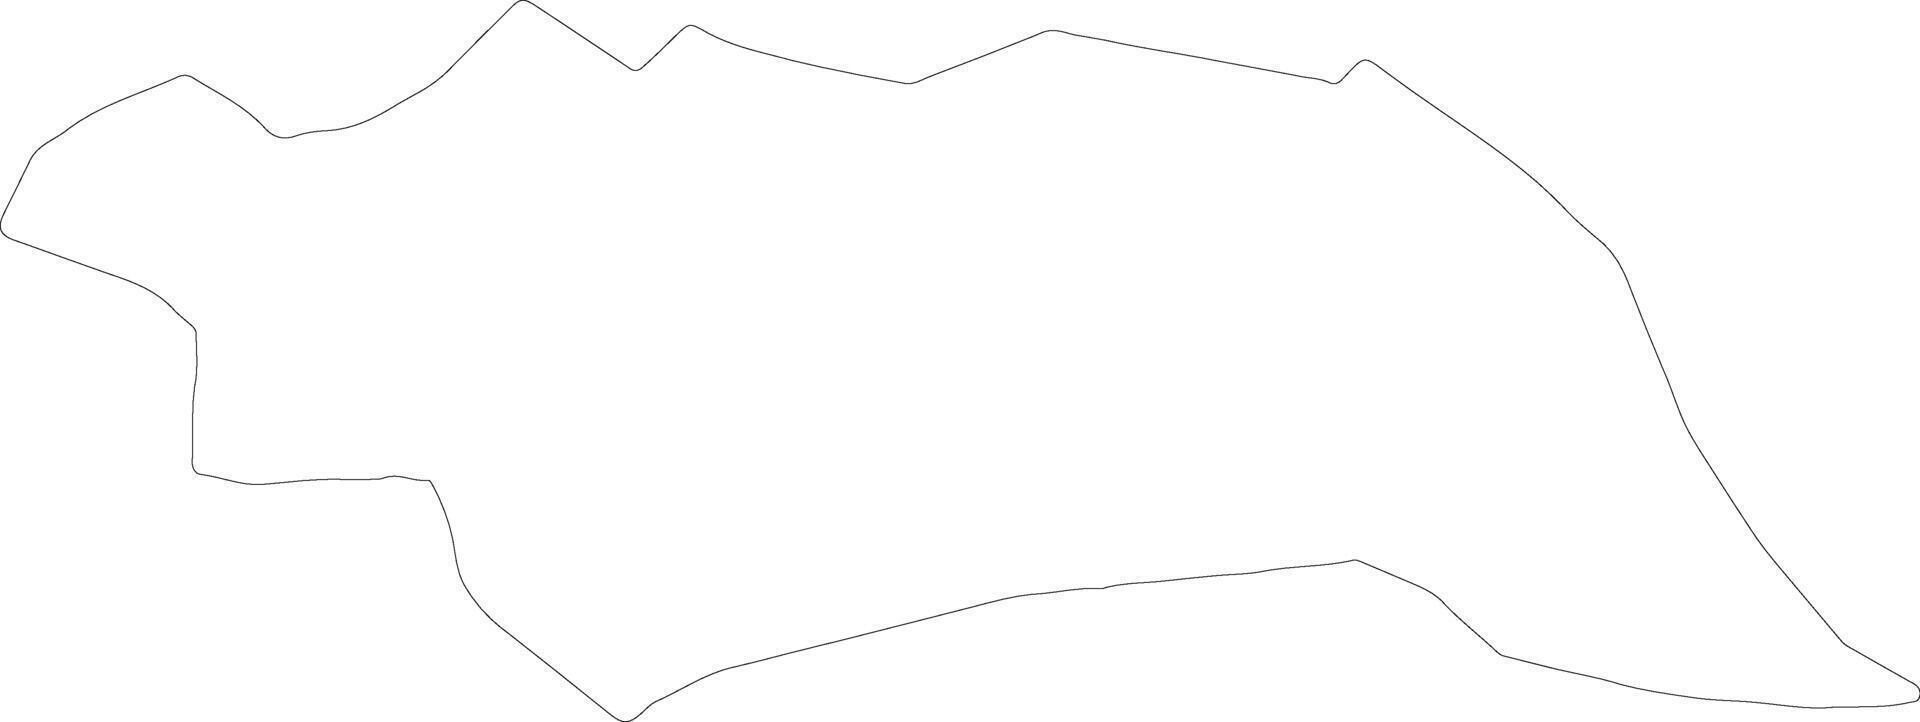 Famagusta Zypern Gliederung Karte vektor